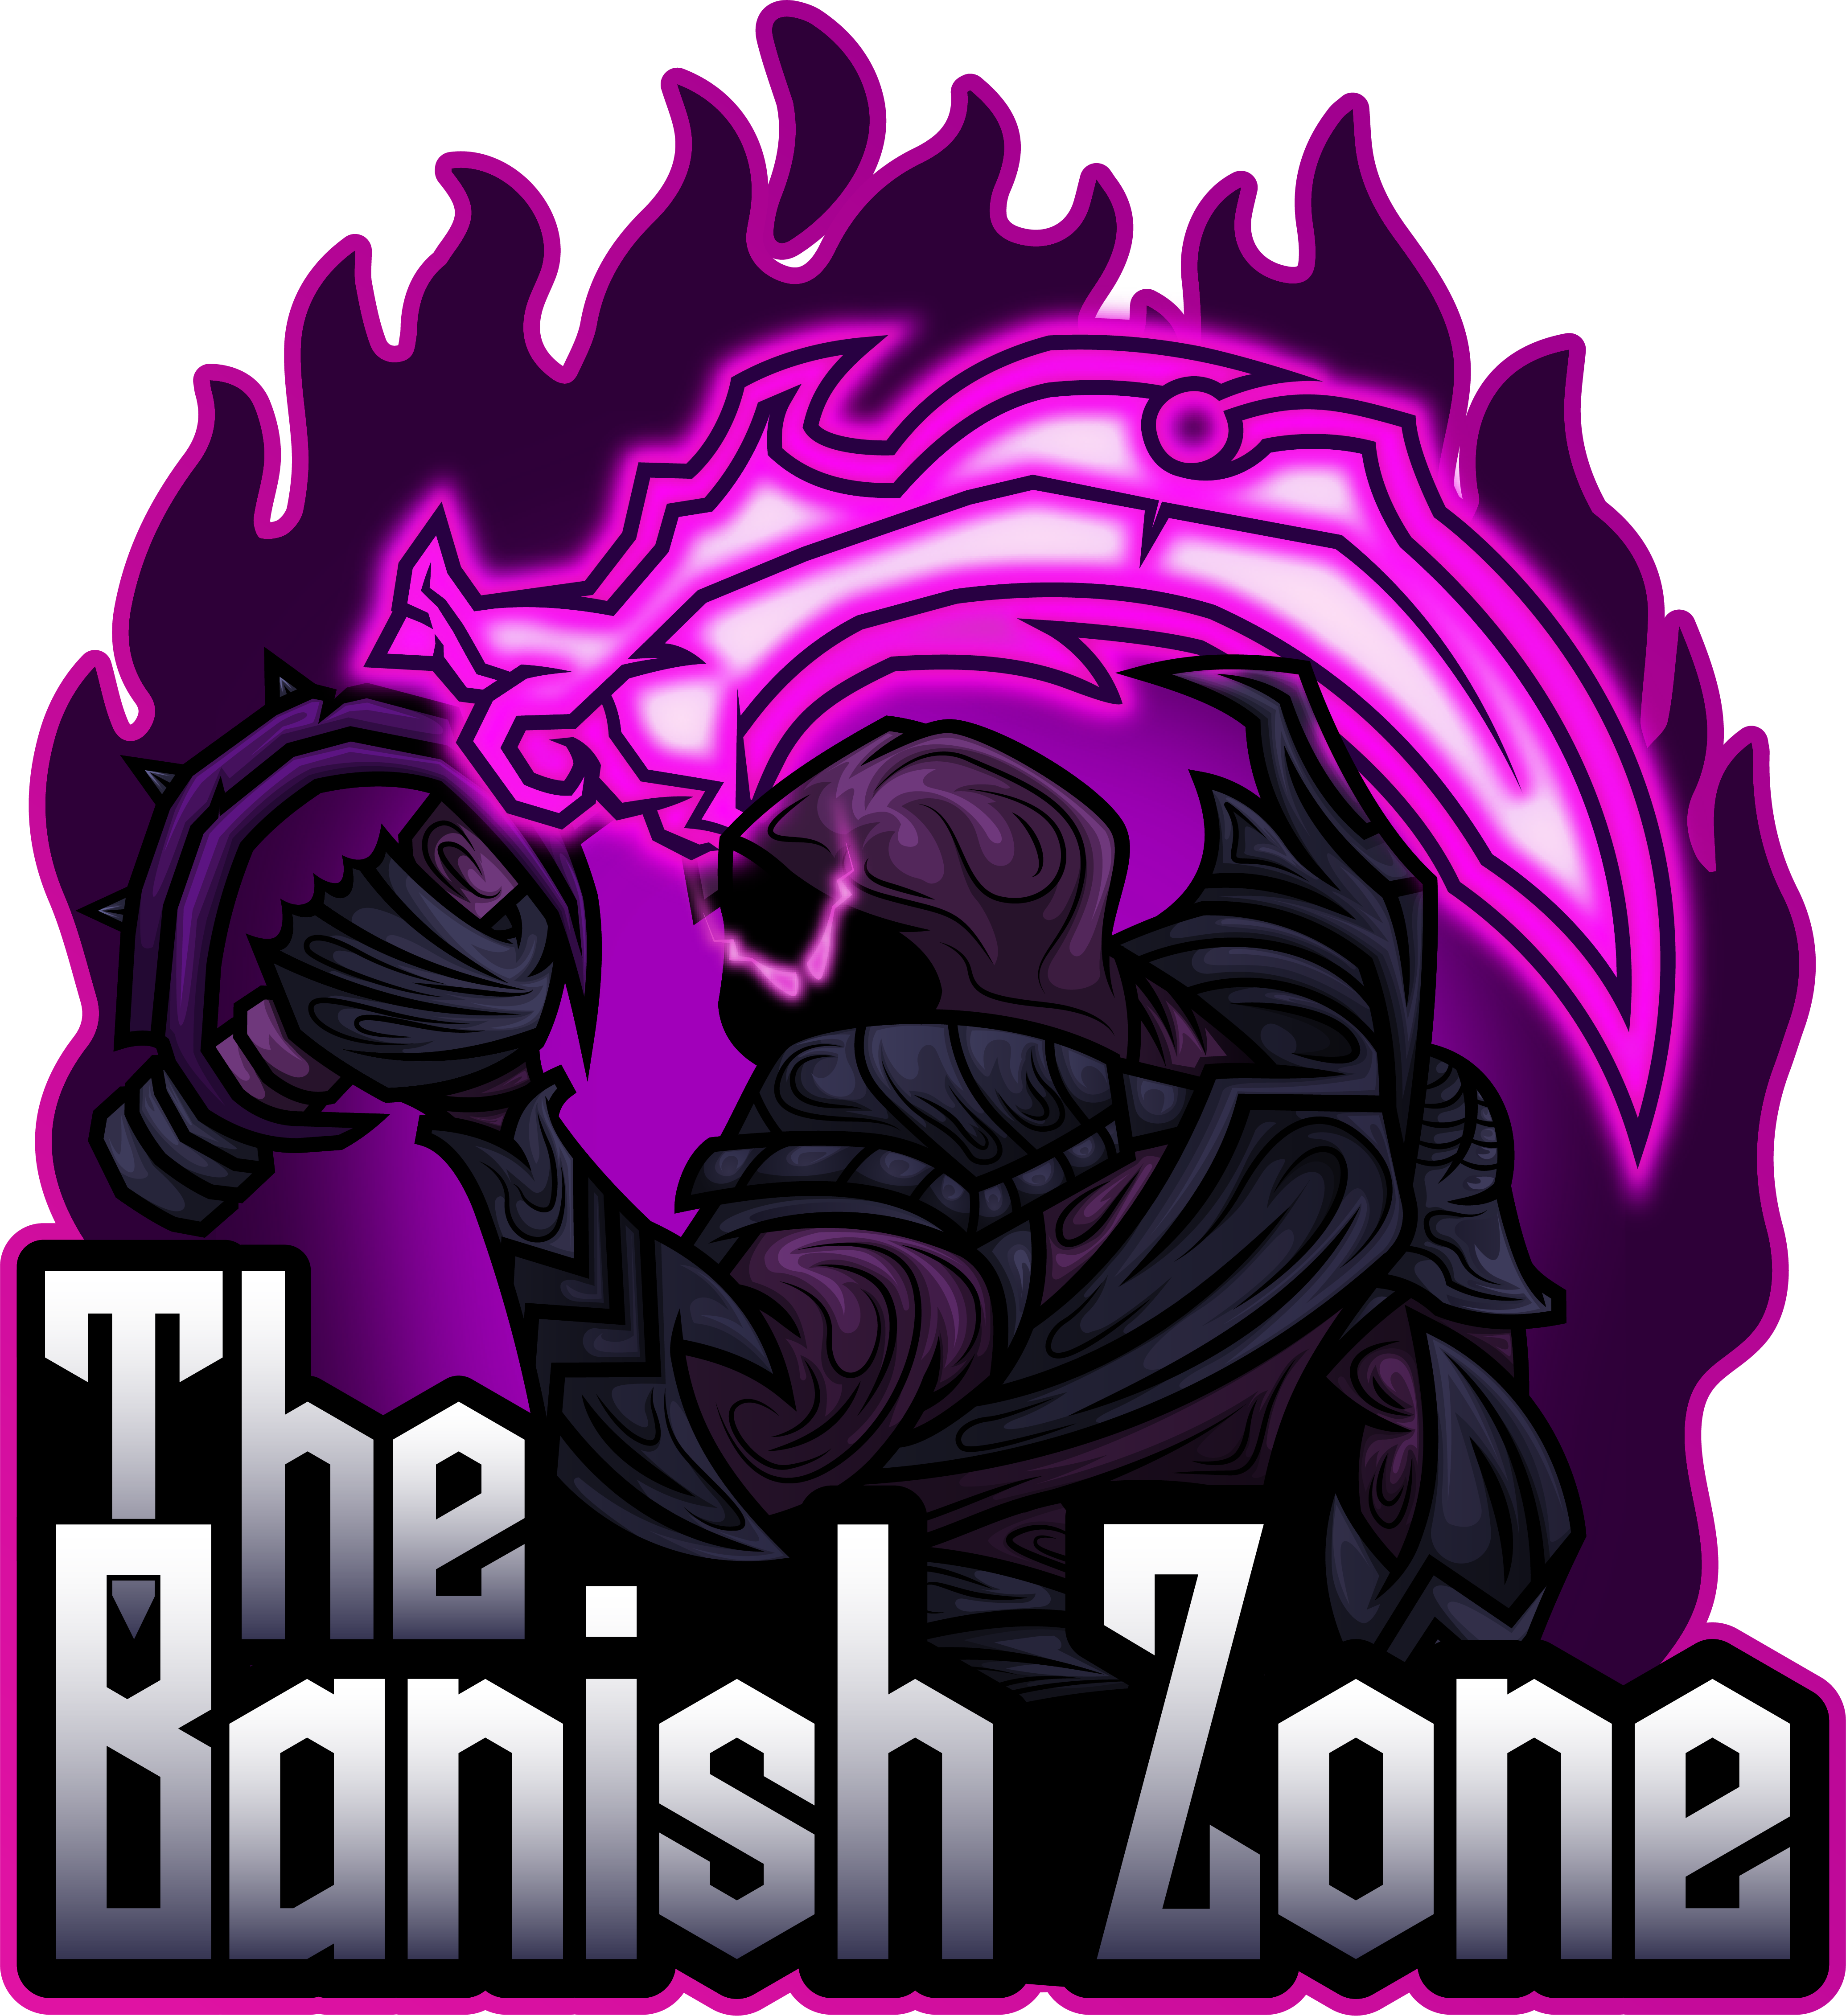 The Banish Zone